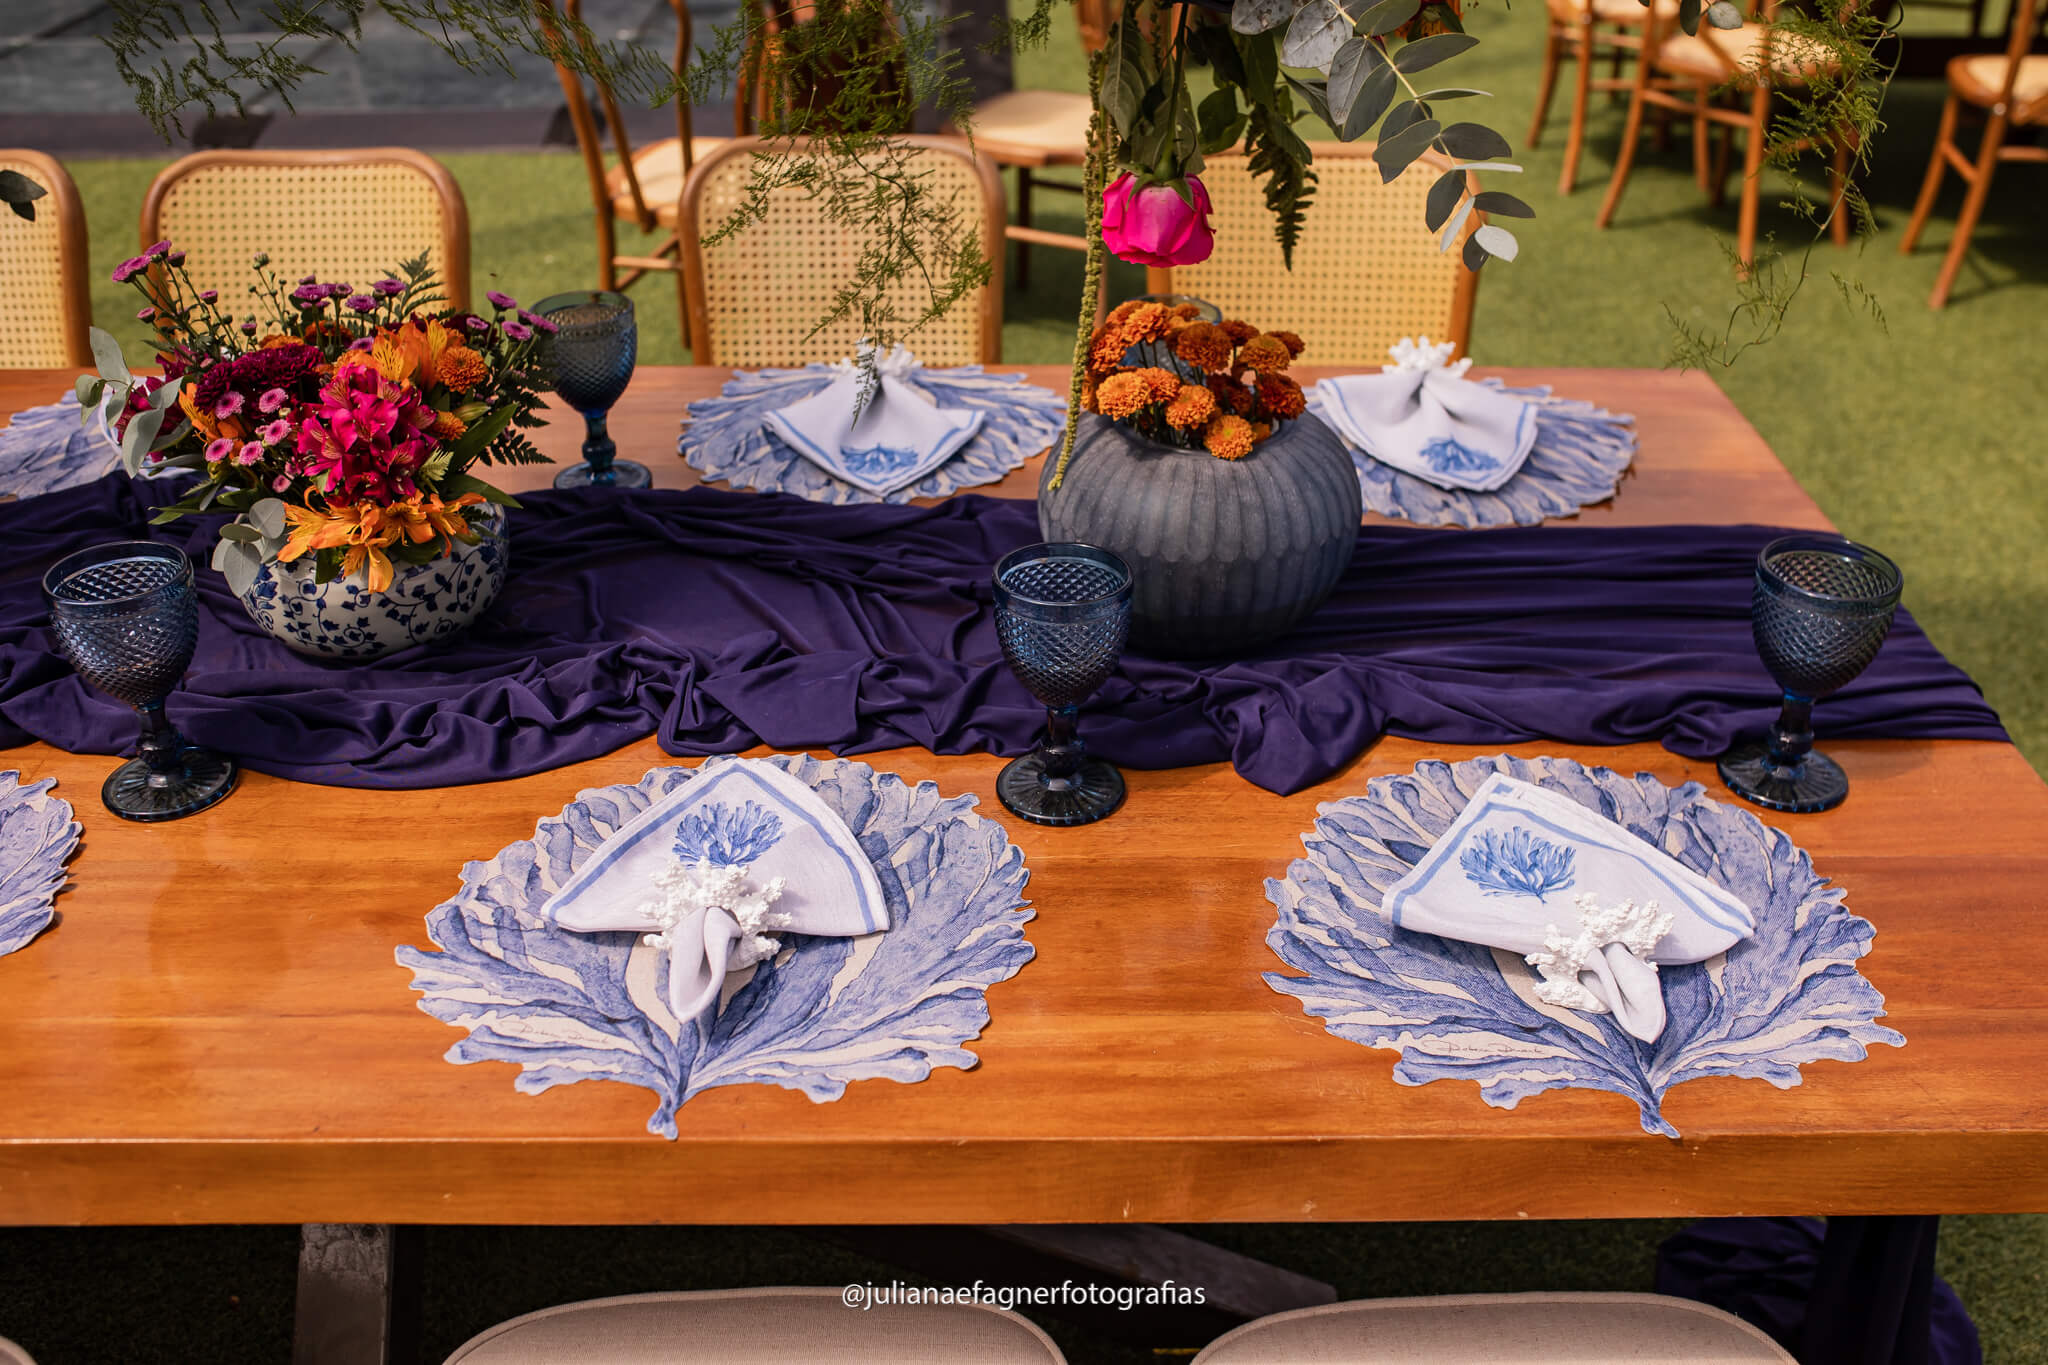 mesa posta com toalha azul no centro e vasos com flores rosas e laranjas